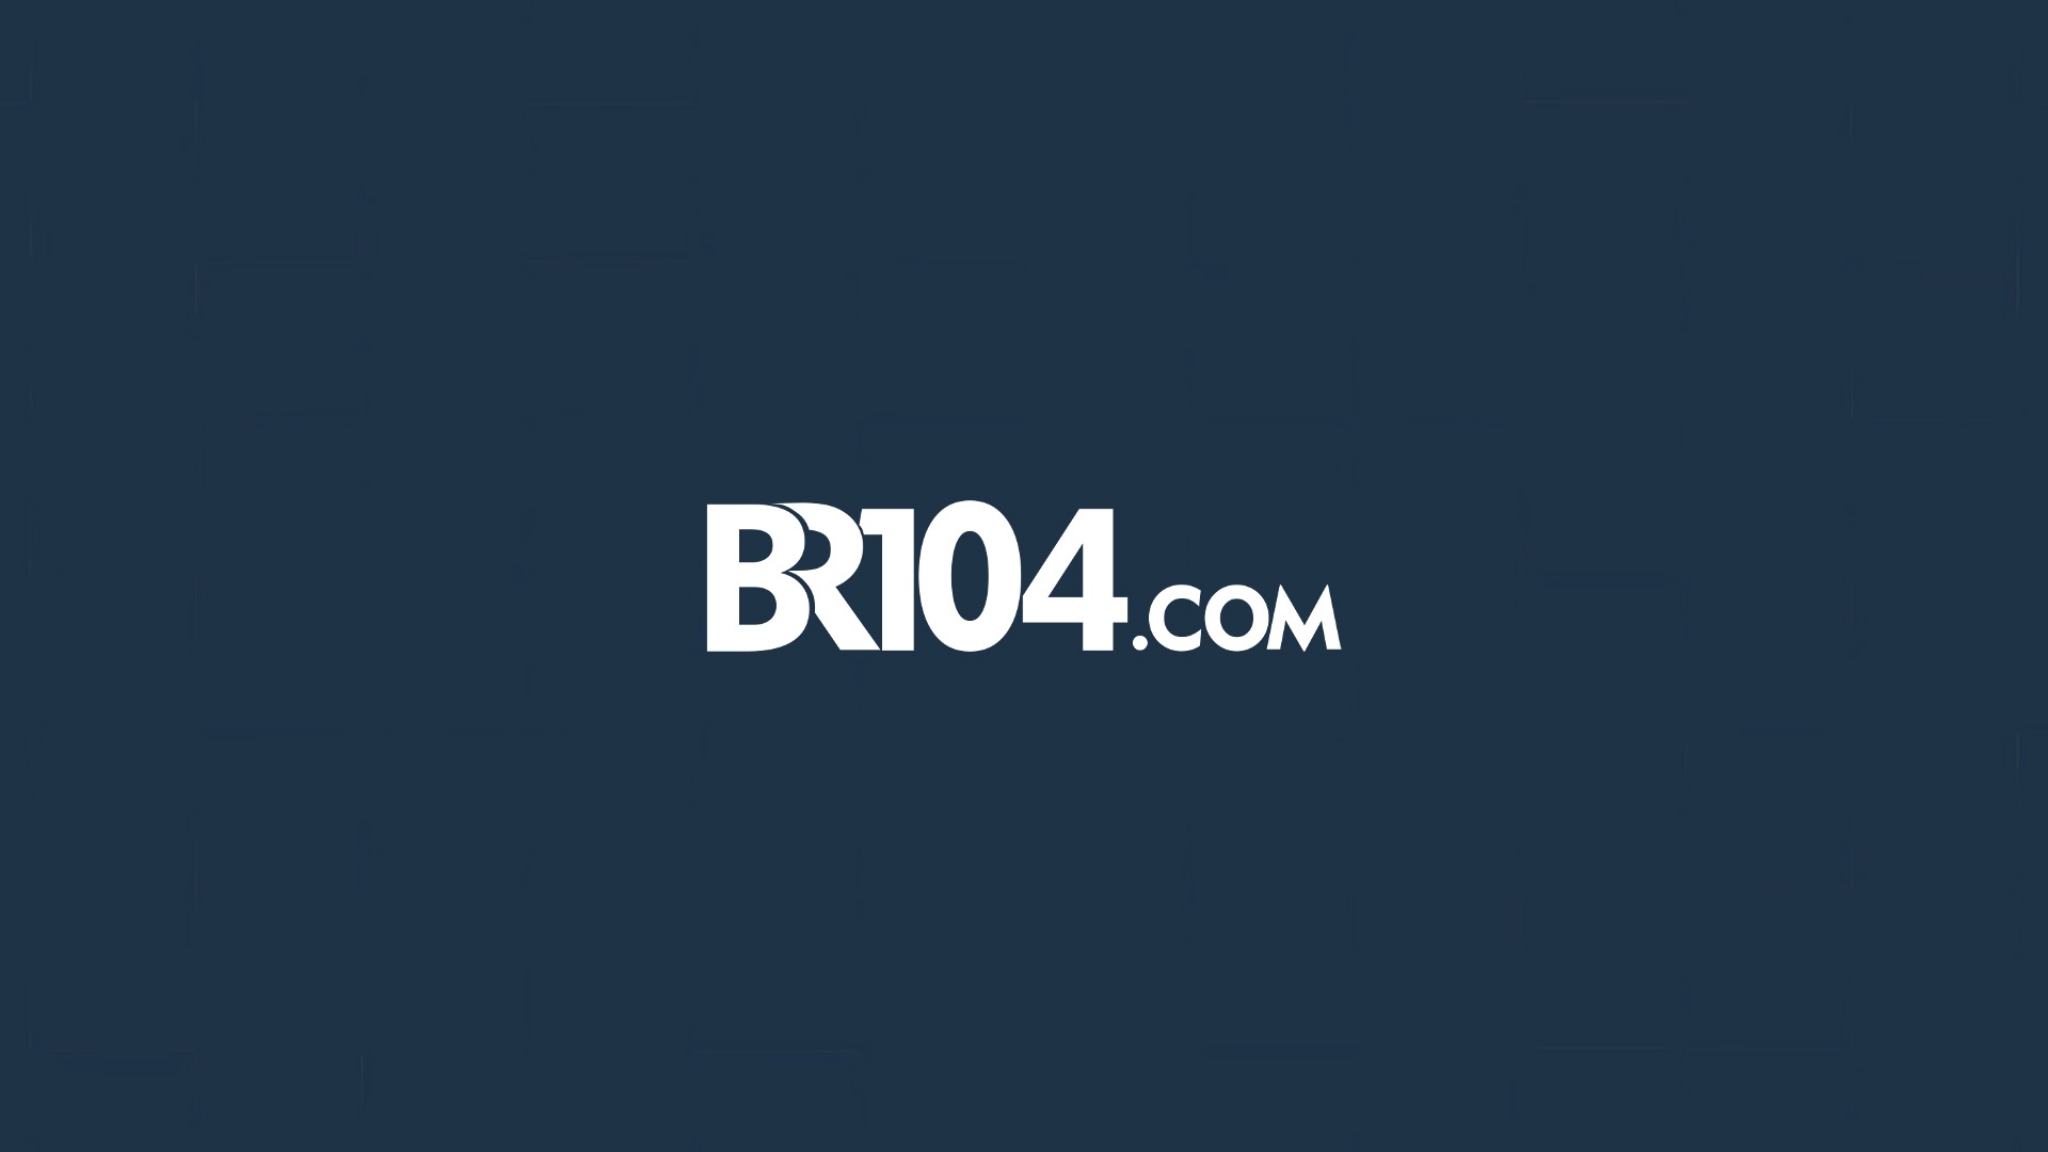 Logo do site BR104